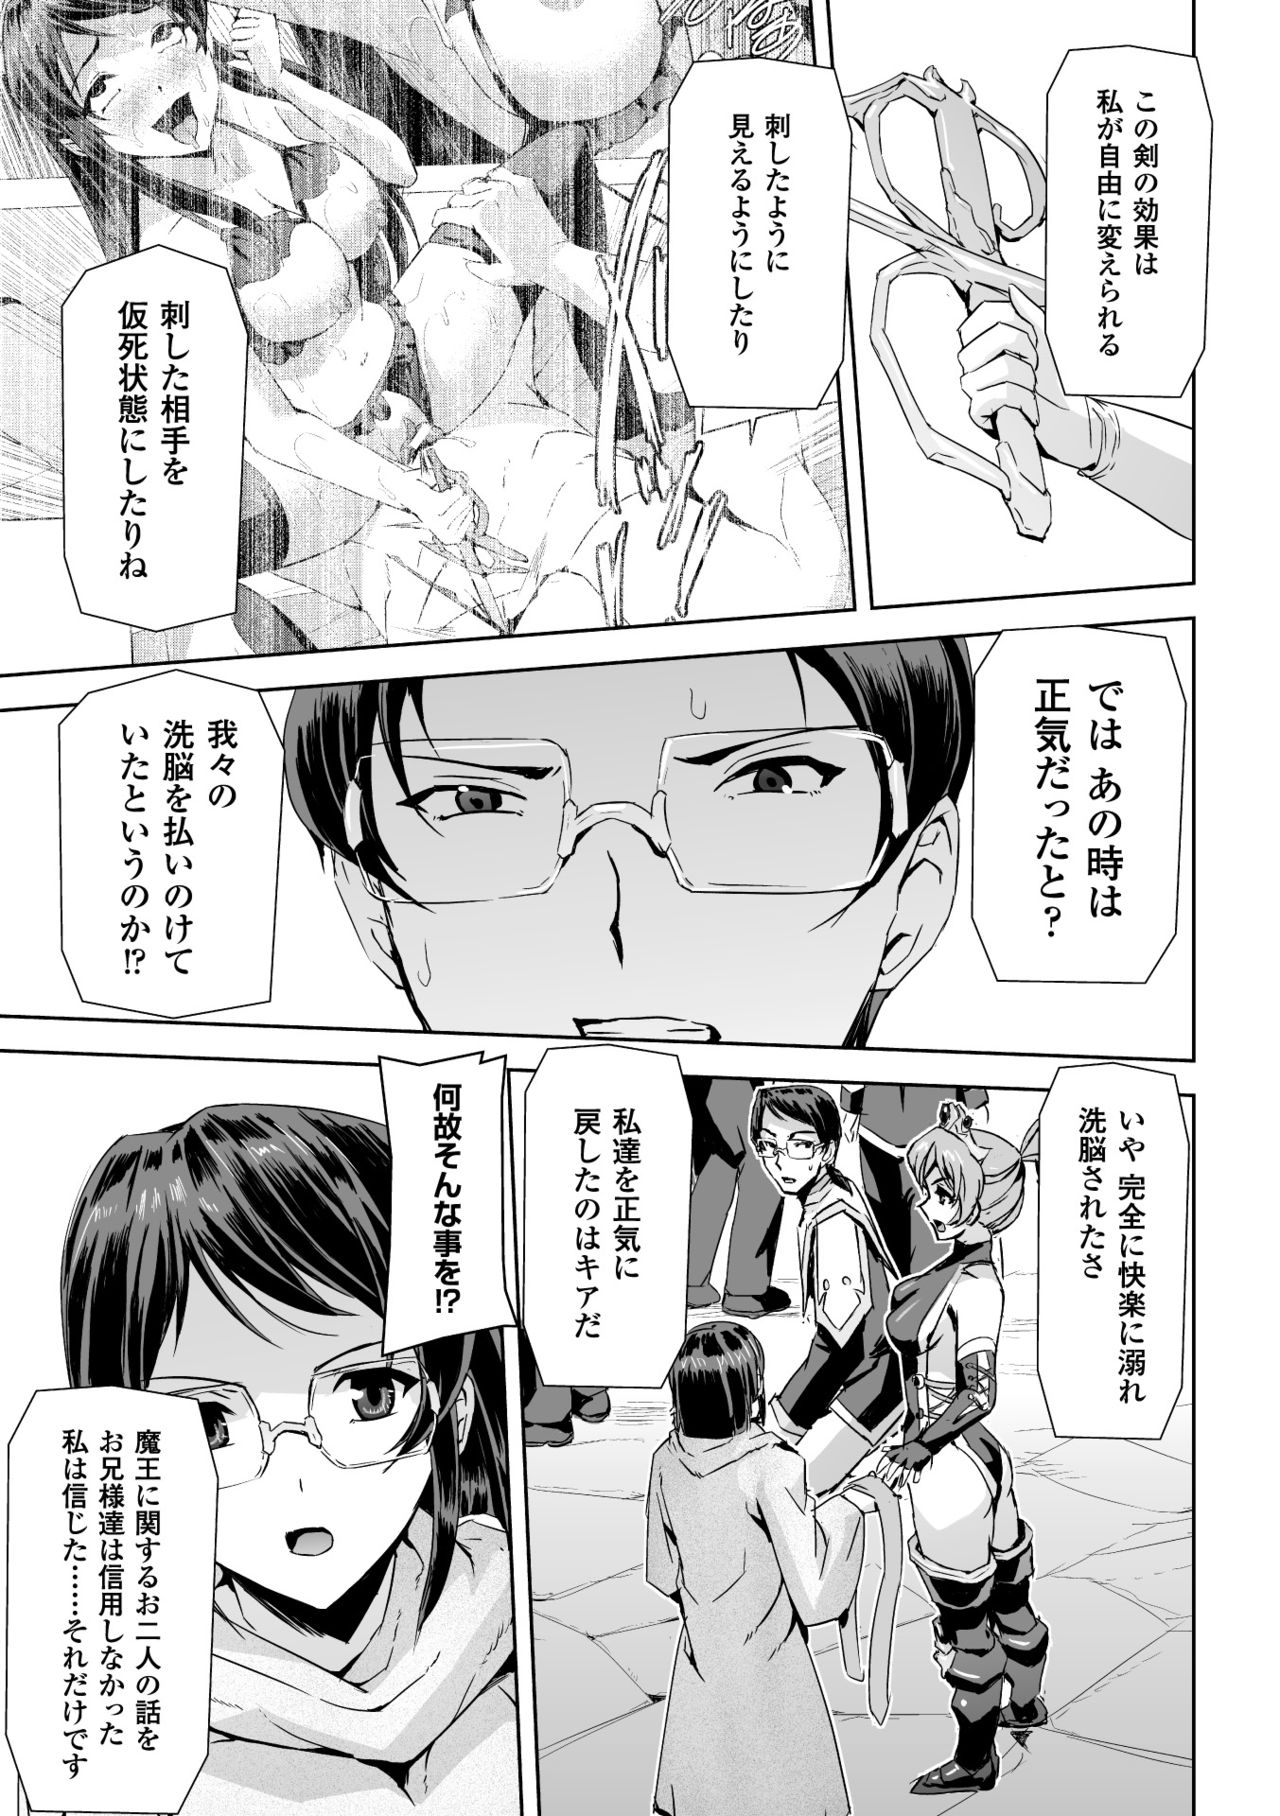 [Anthology] Seigi no Heroine Kangoku File Vol. 2 [Digital] page 49 full